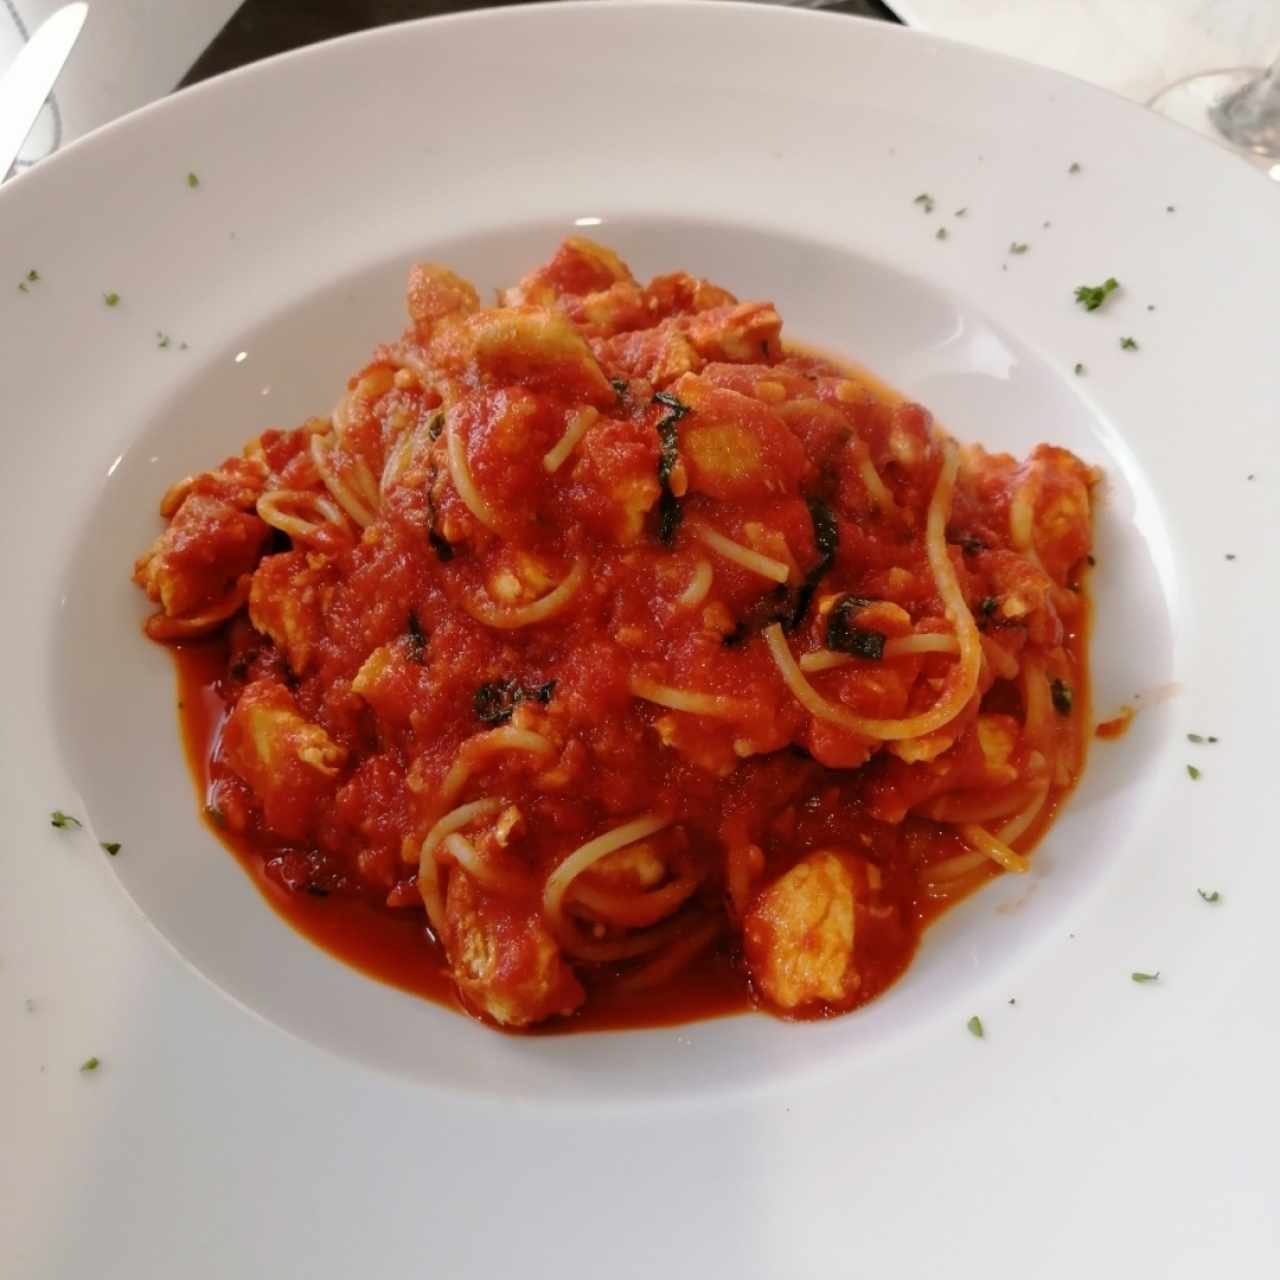 Spaghetti con salsa roja